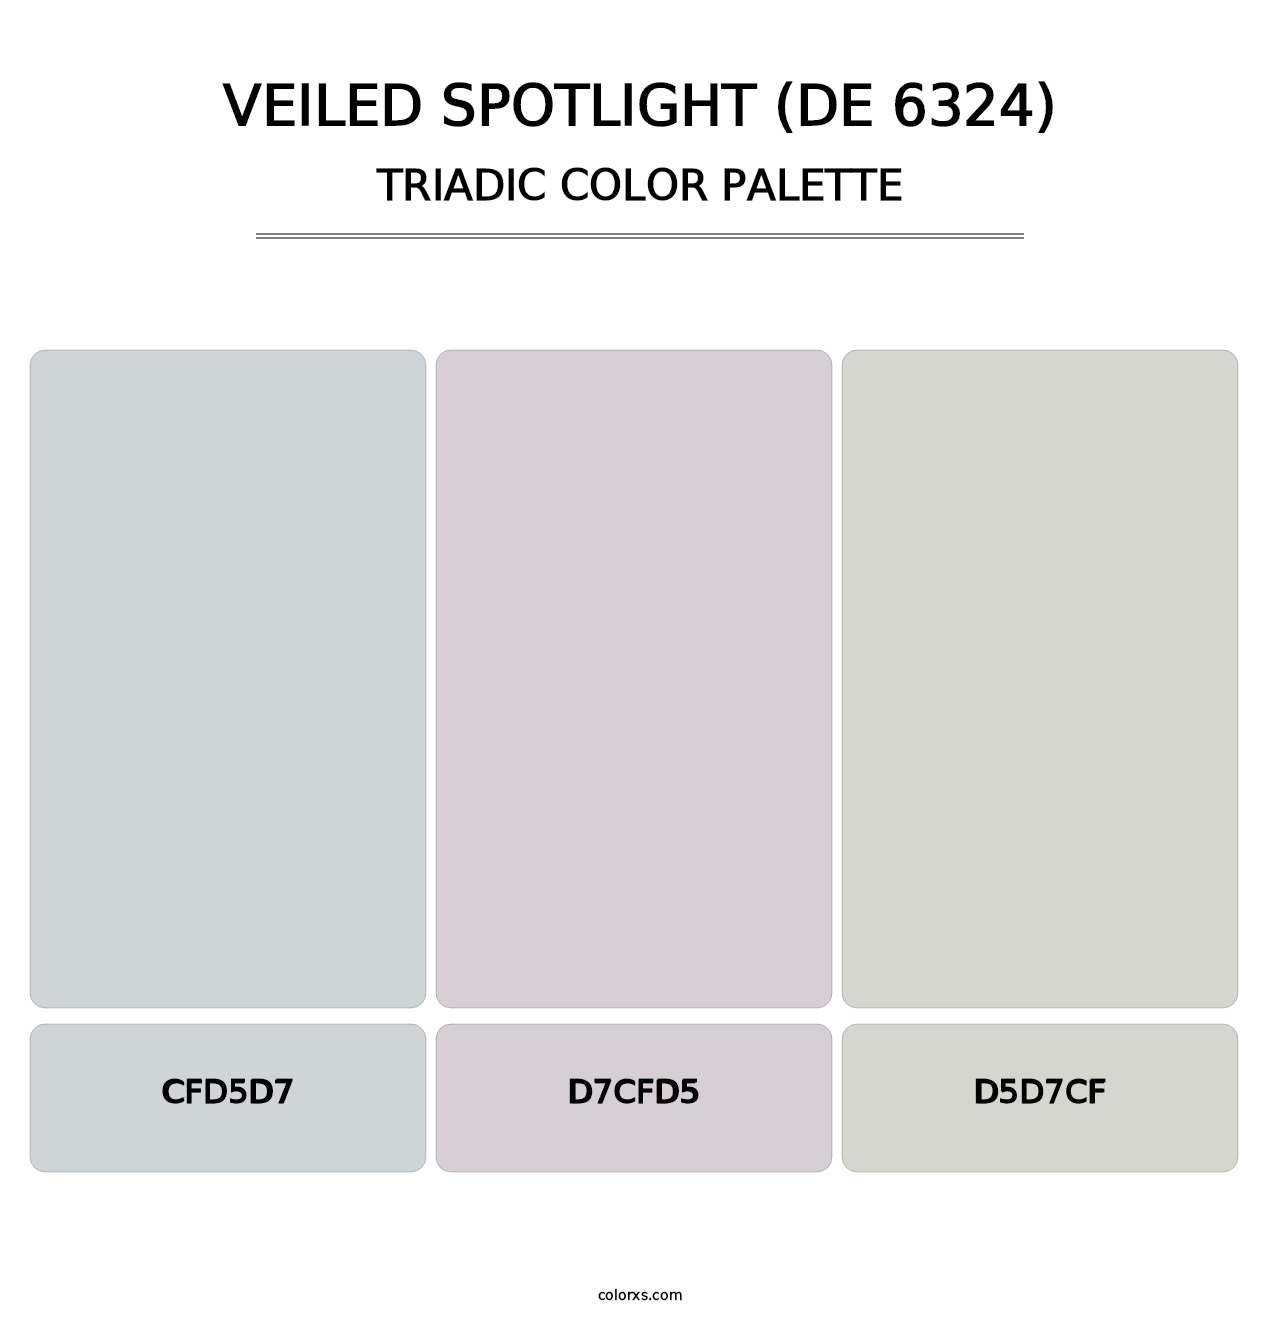 Veiled Spotlight (DE 6324) - Triadic Color Palette